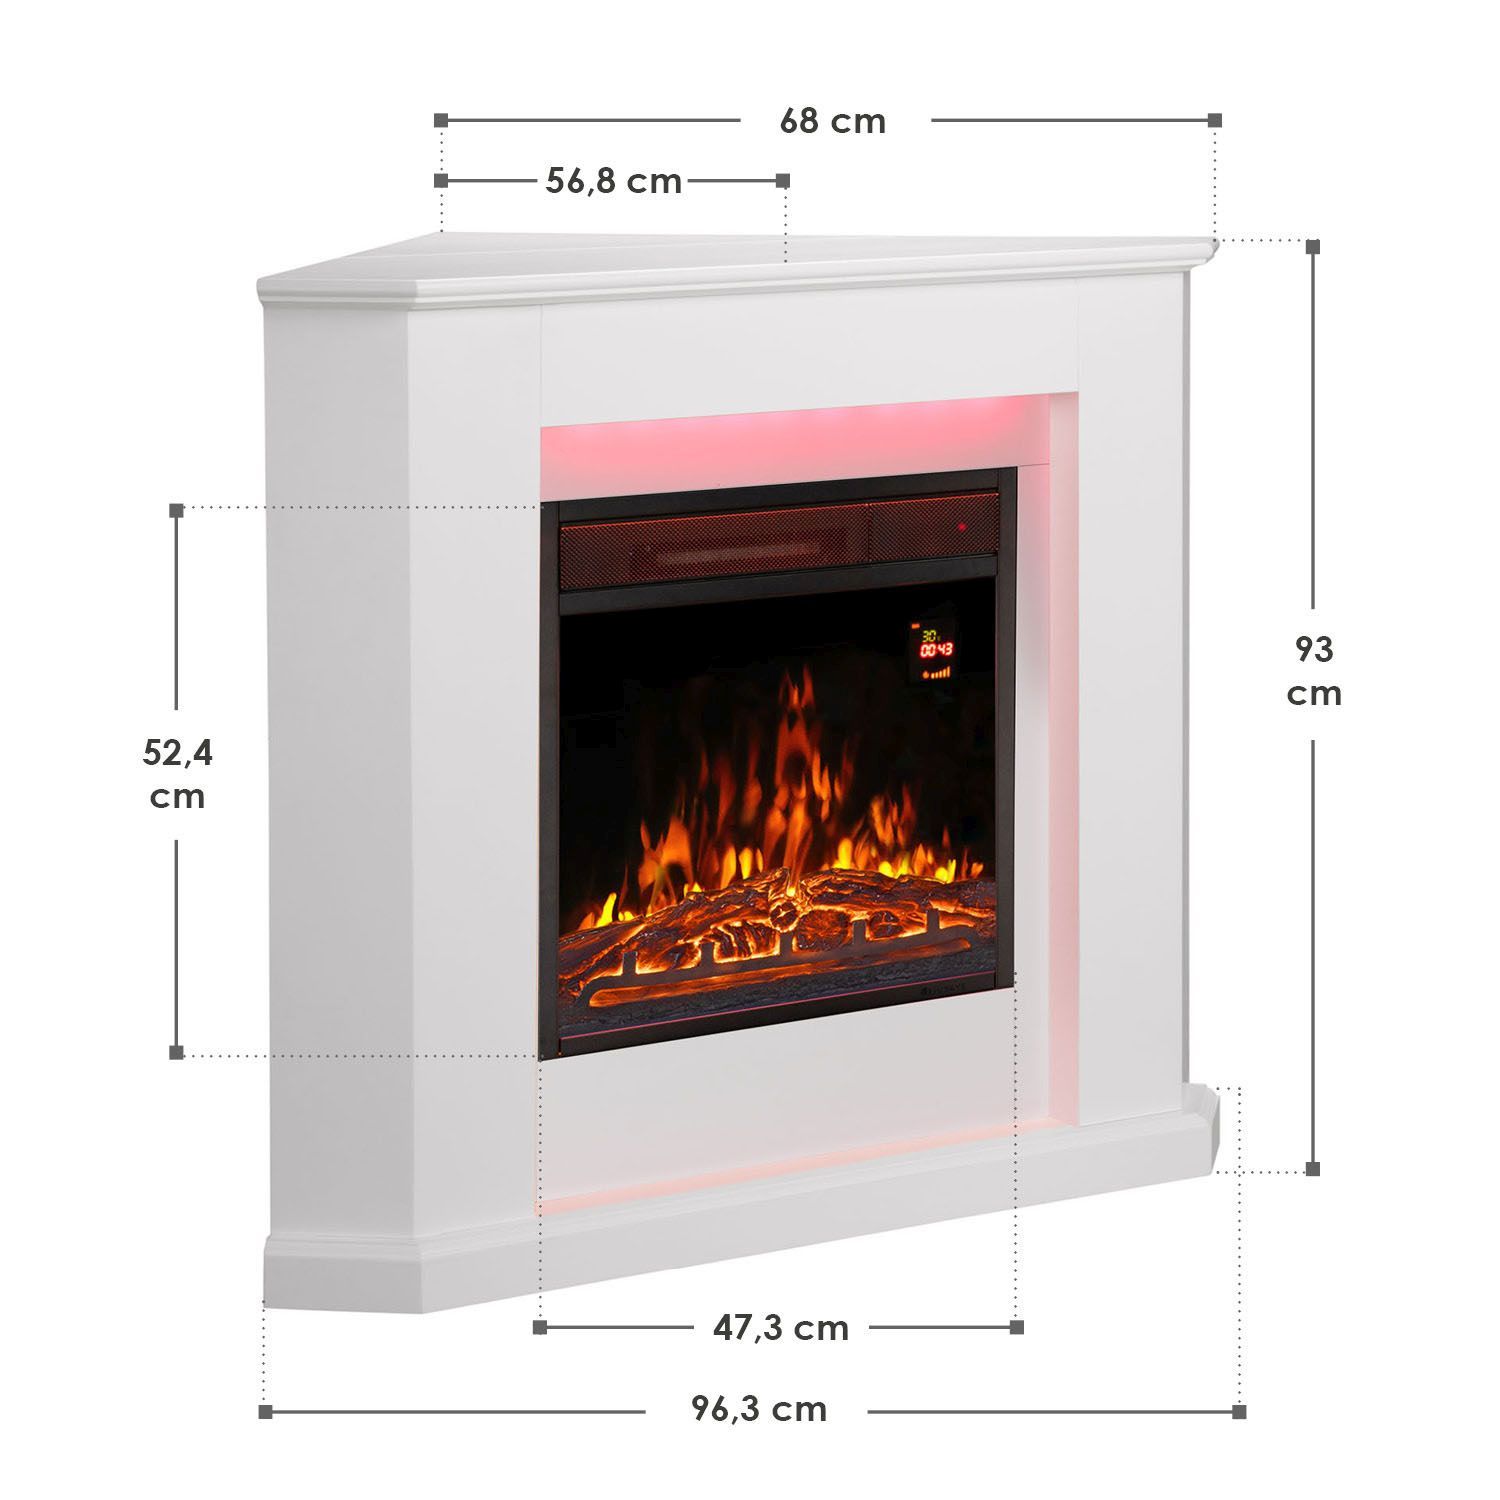 璧炉架/壁炉框/fireplace /mantel产品图